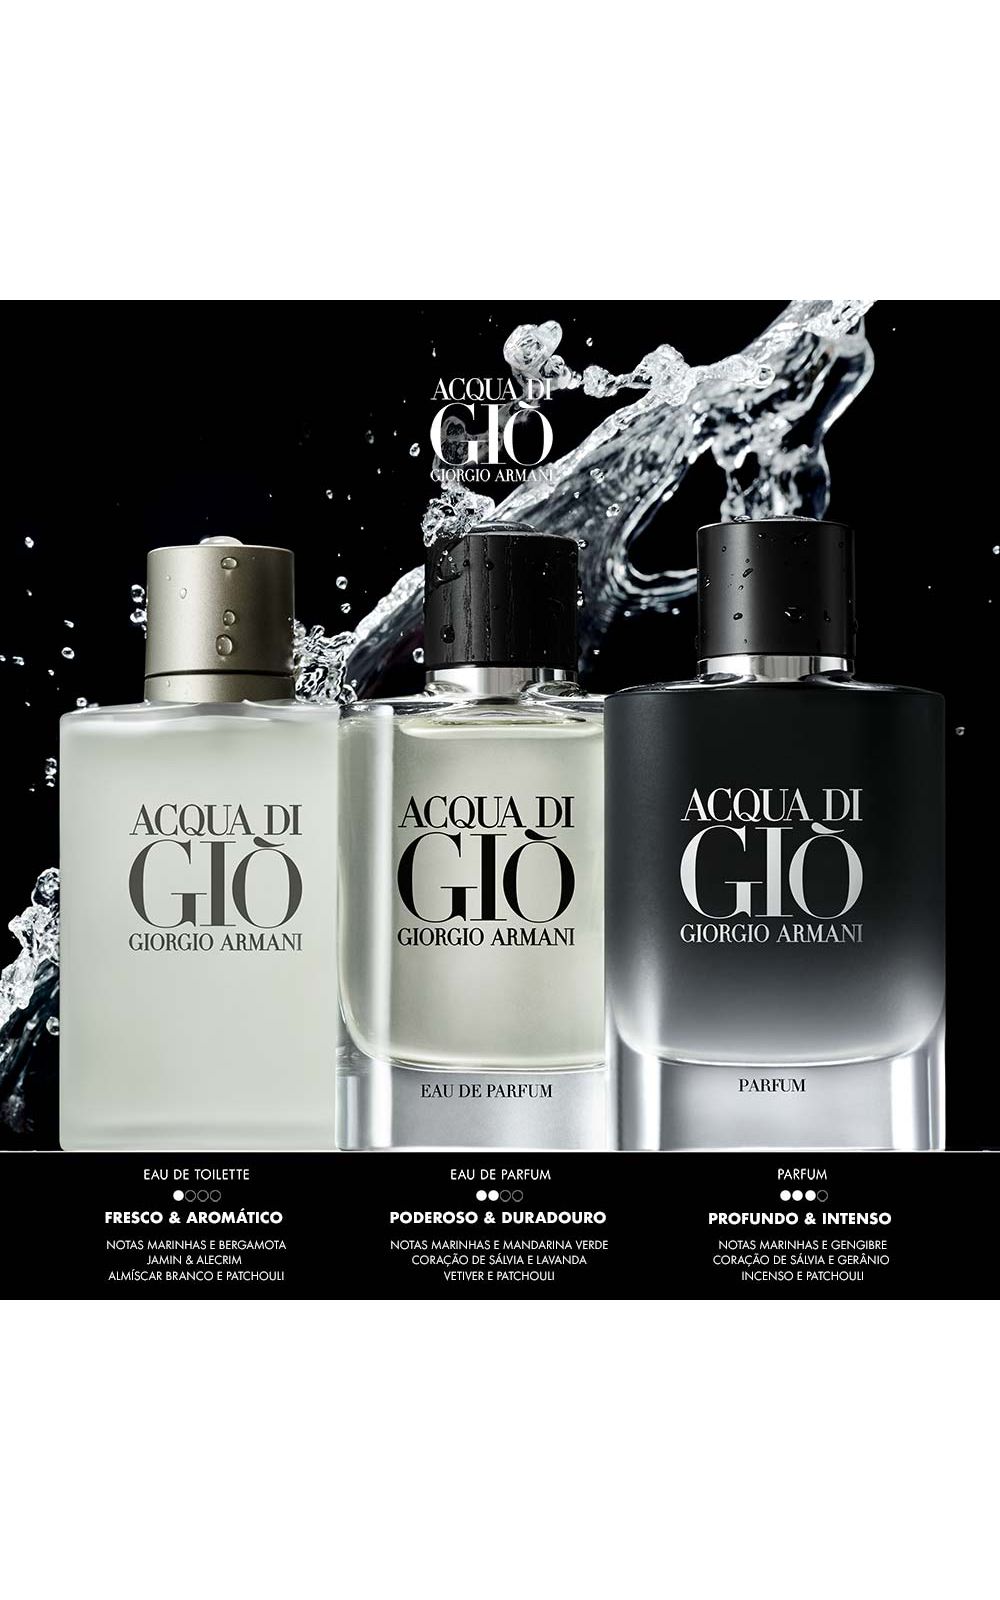 Foto 6 - Acqua Di Giò Homme Giorgio Armani - Perfume Masculino - Eau de Toilette - 100ml